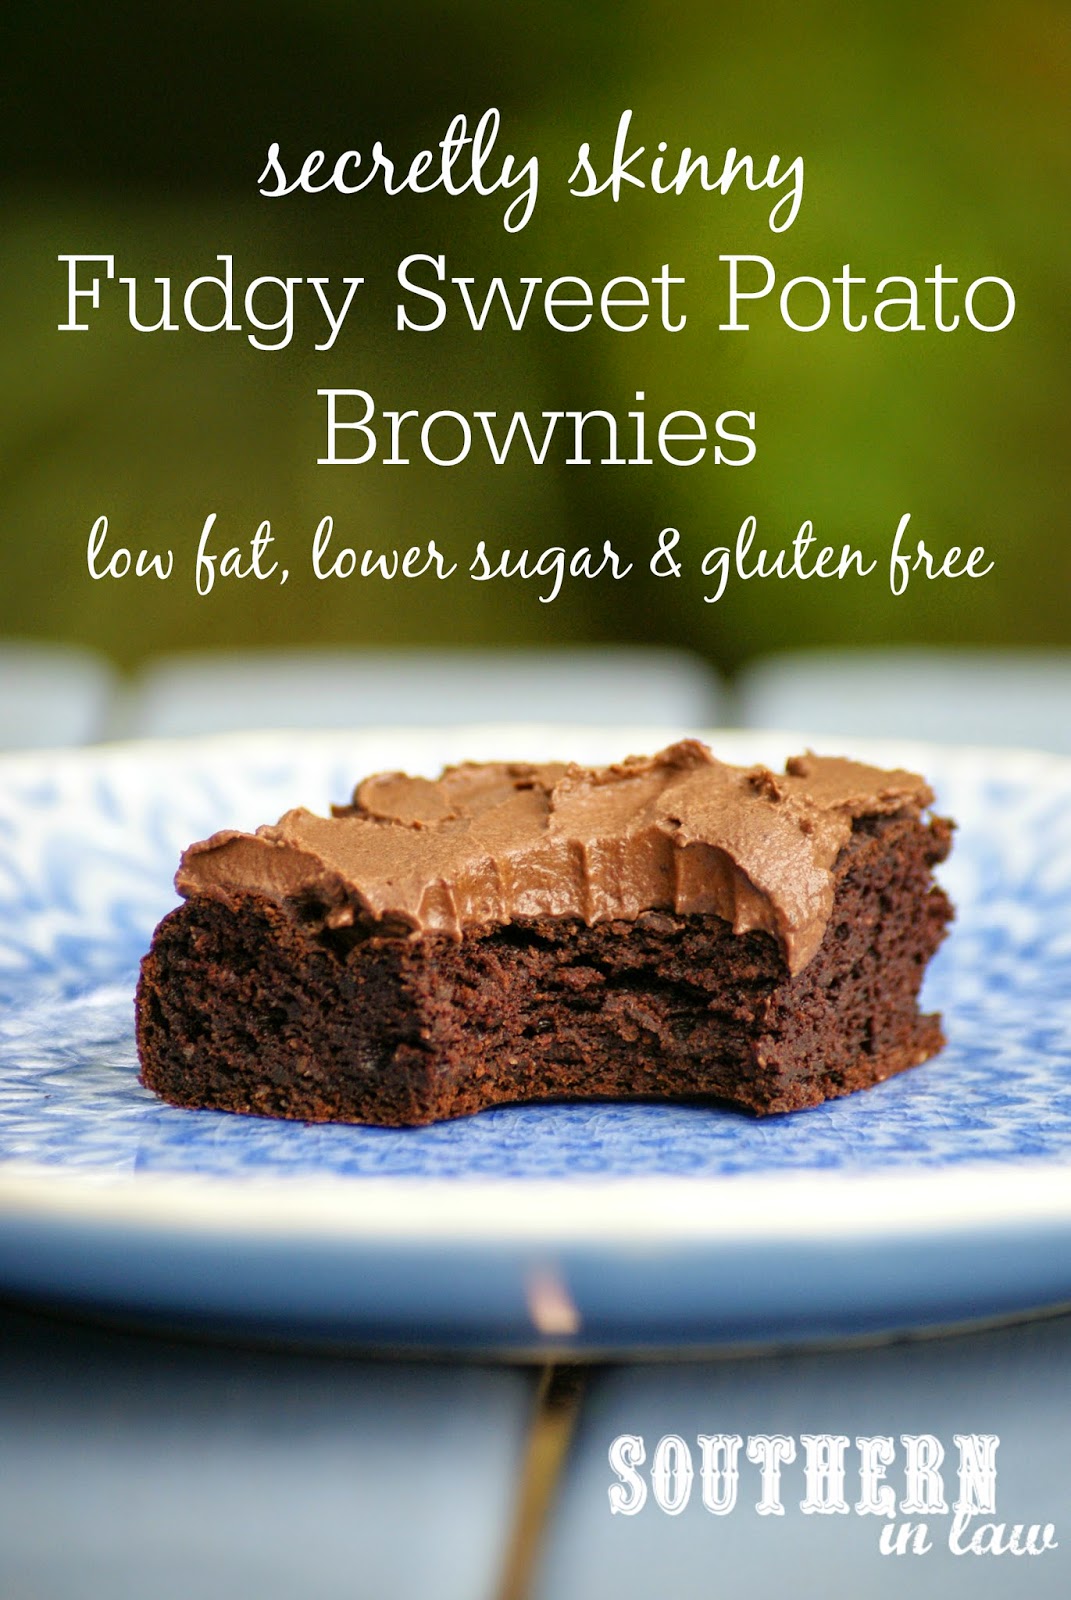 Secretly Skinny Sweet Potato Brownies Recipe - low fat, gluten free, low sugar, healthy